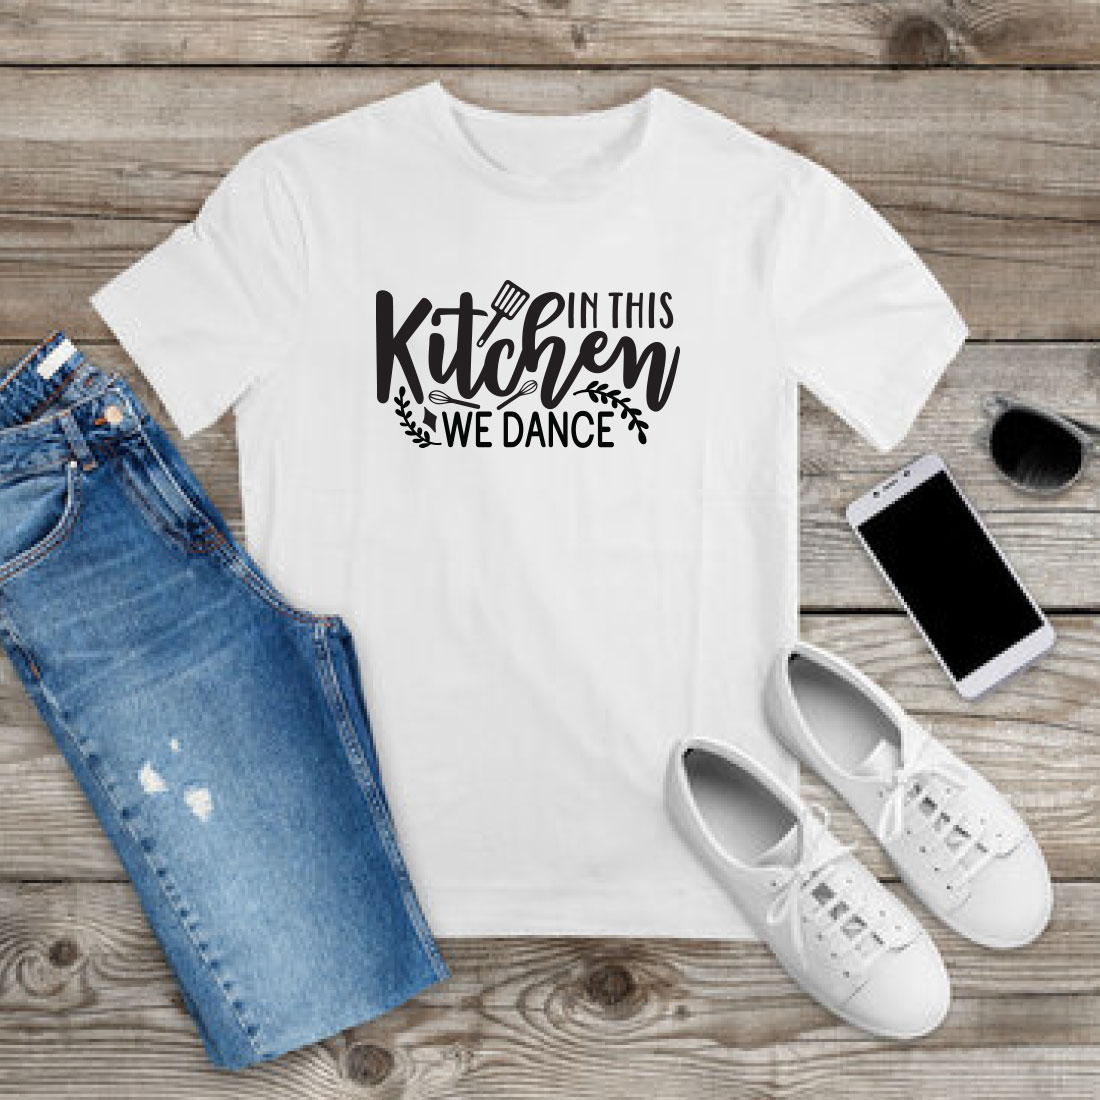 Kitchen T-shirt Design Bundle Vol-02 preview image.